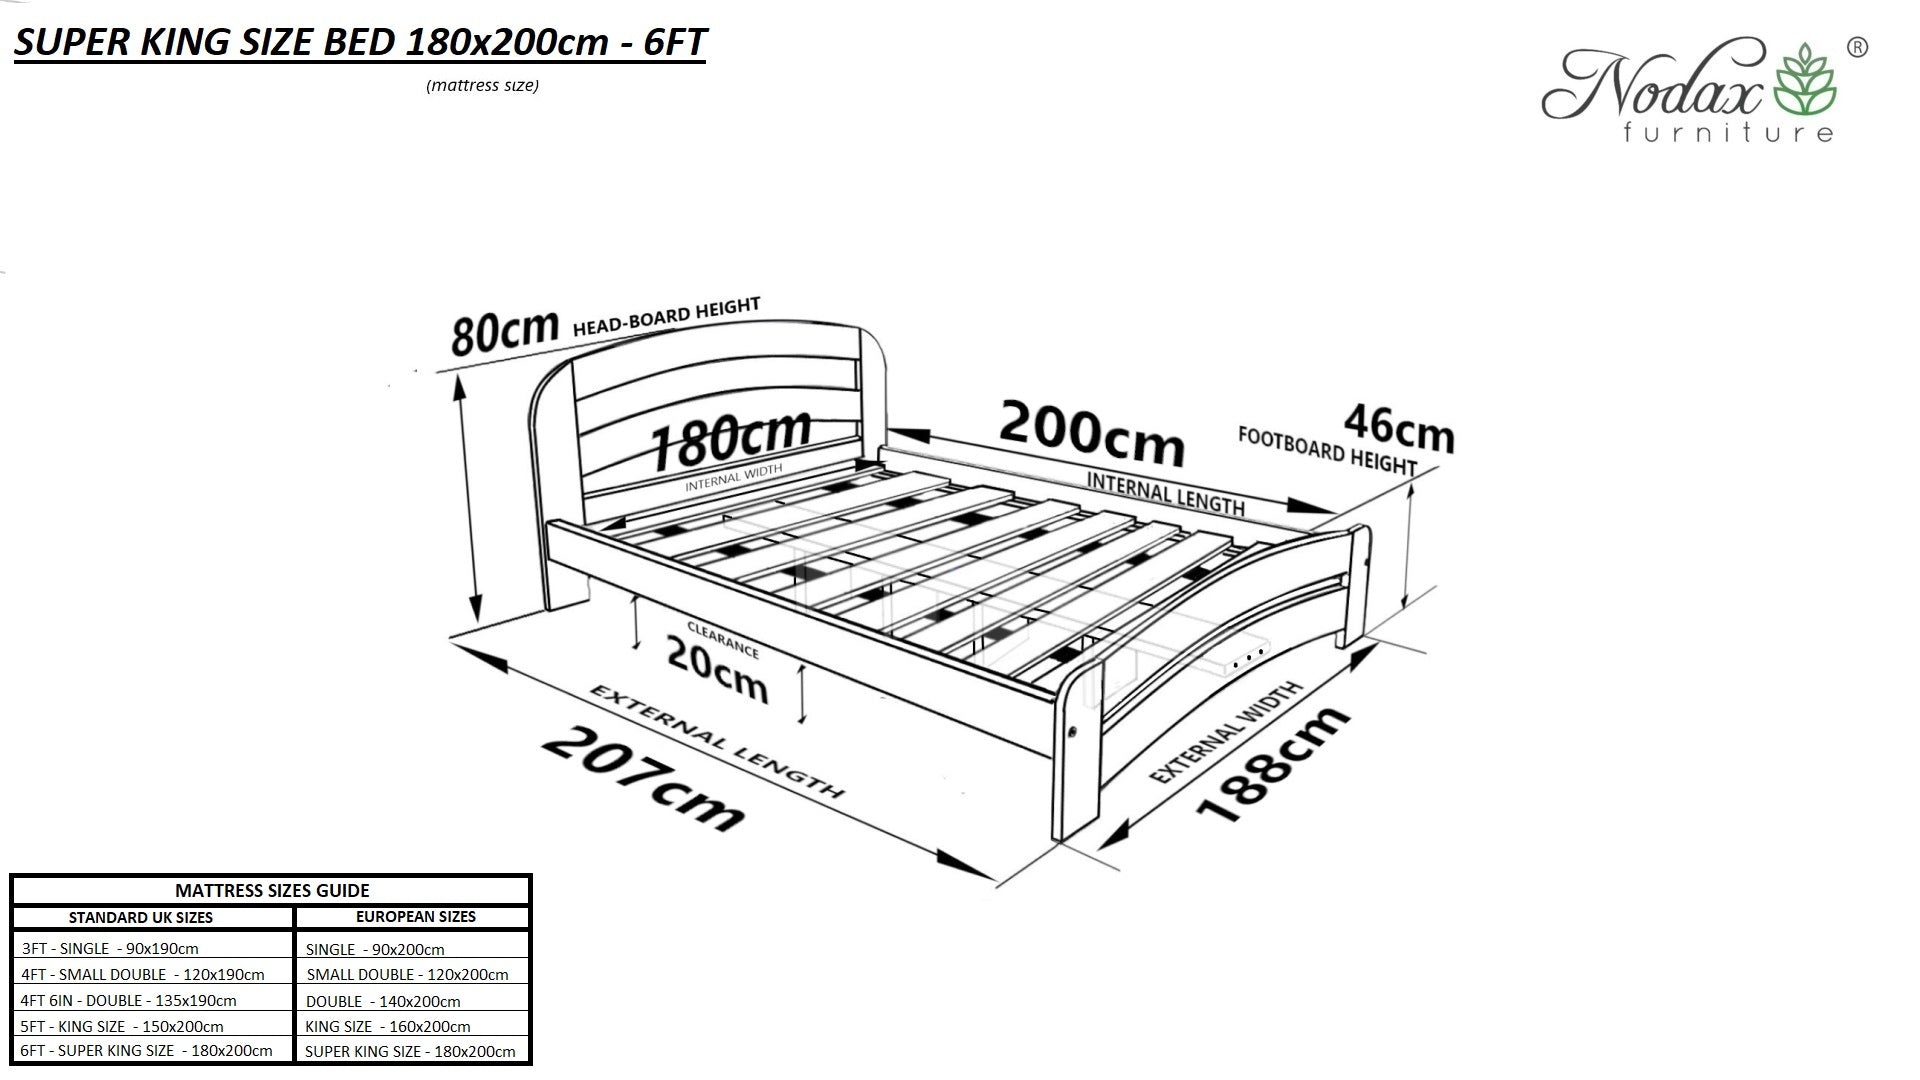 Bed-frame-super-king-size-6ft